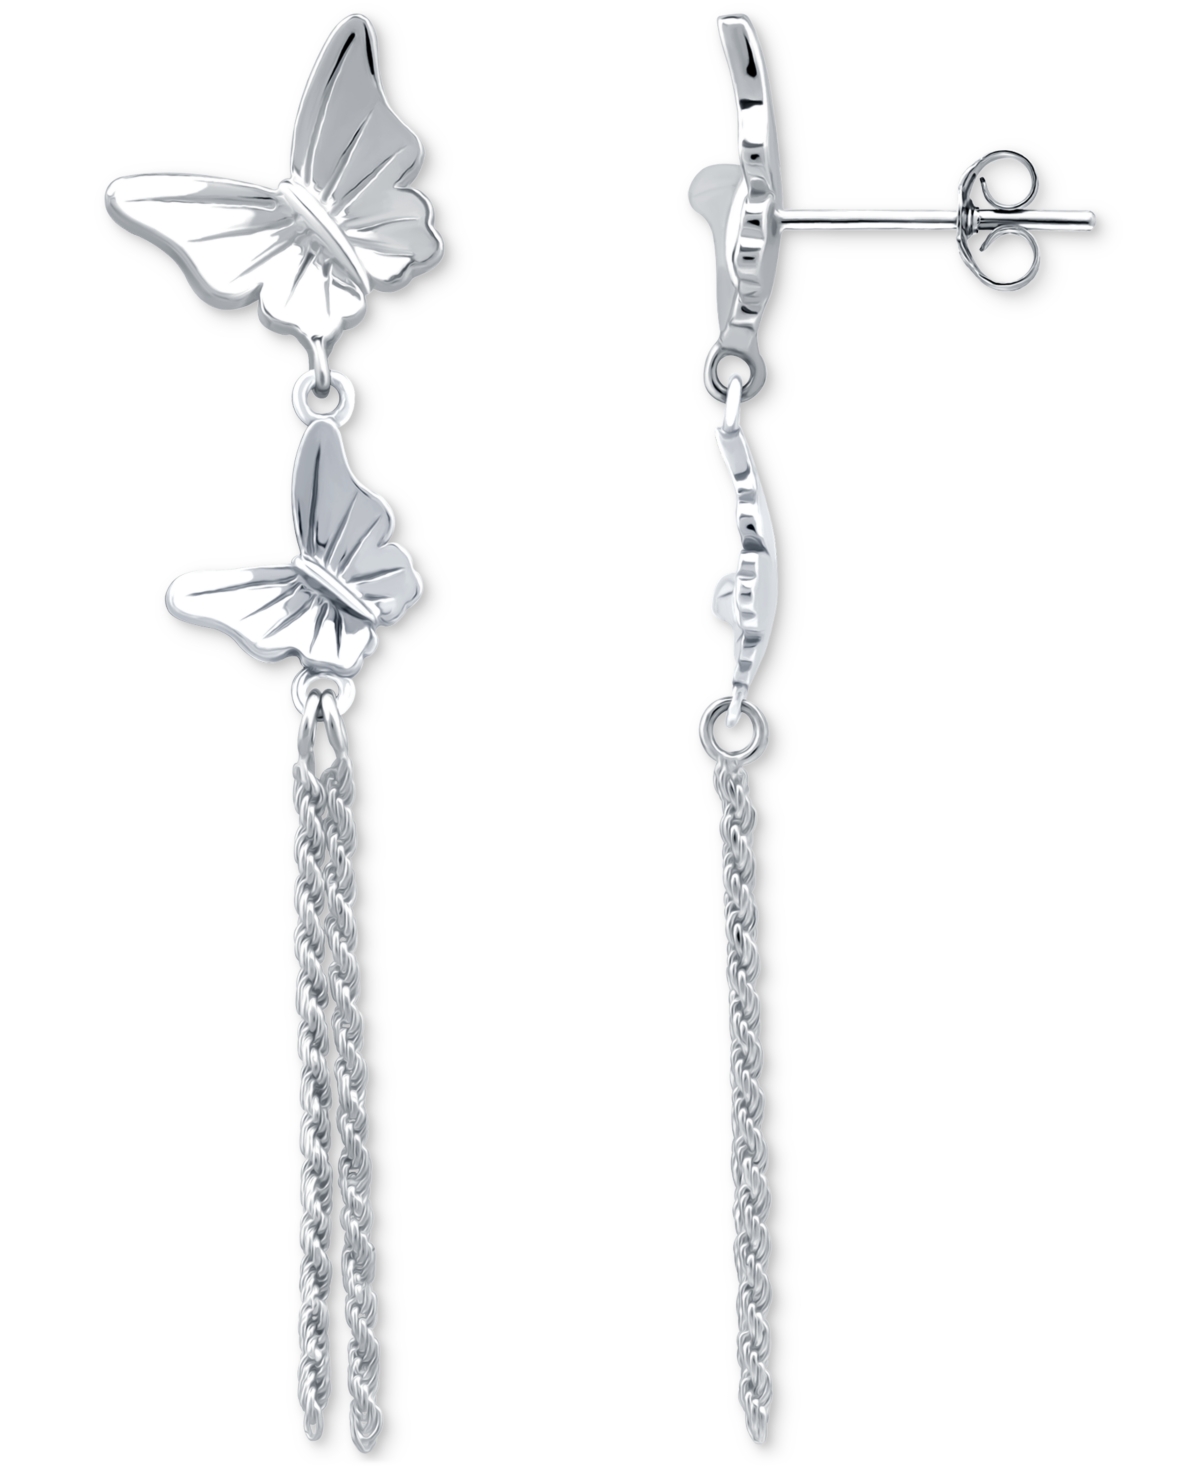 Giani Bernini Double Butterfly Chain Drop Earrings, Created For Macy's In Silver